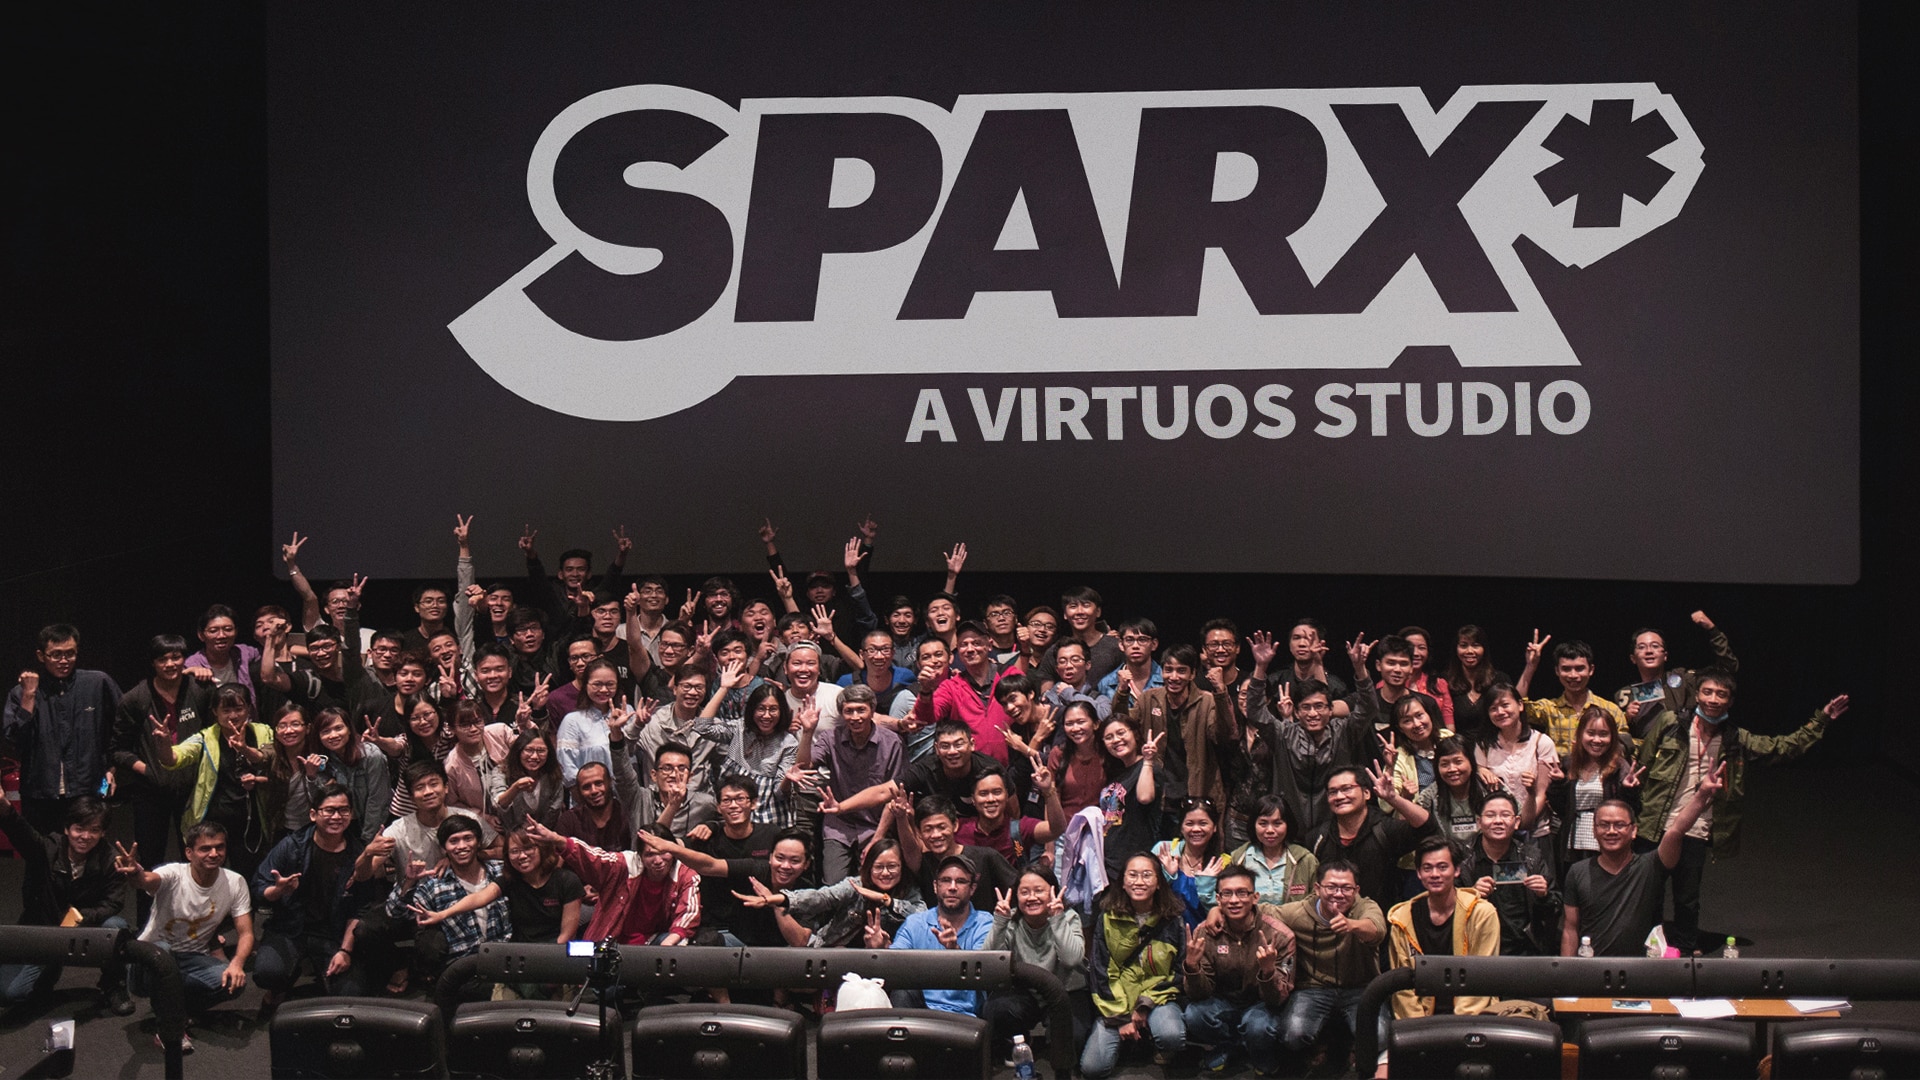 Sparx* - A Virtuos Studio - Virtuos